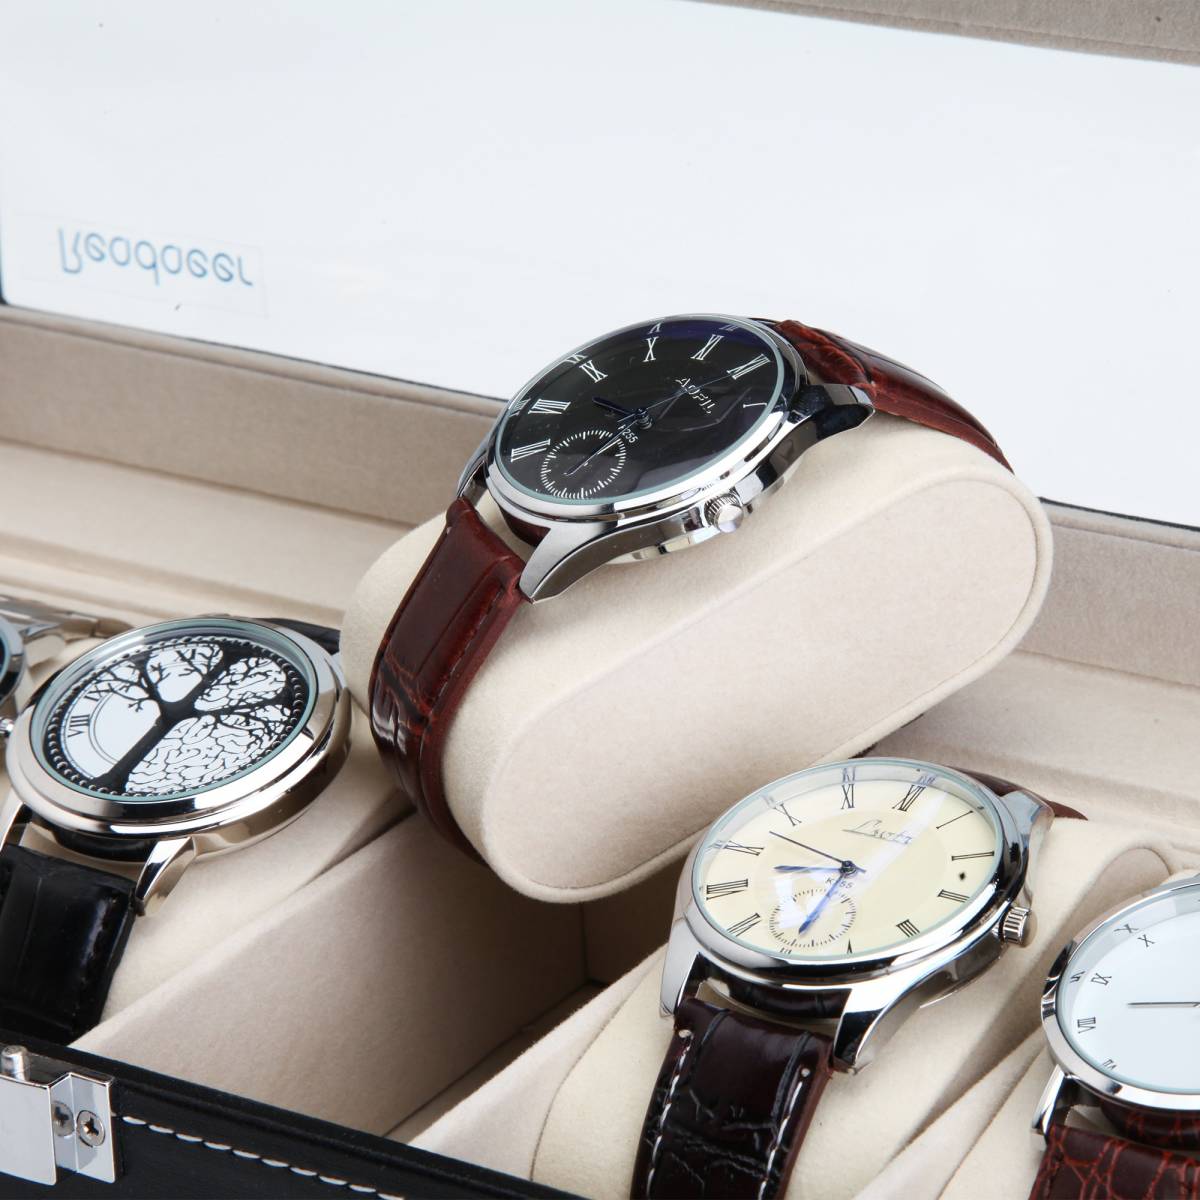  腕時計収納ケース 腕時計収納ボックス コレクションケース 6本用 A481_画像8